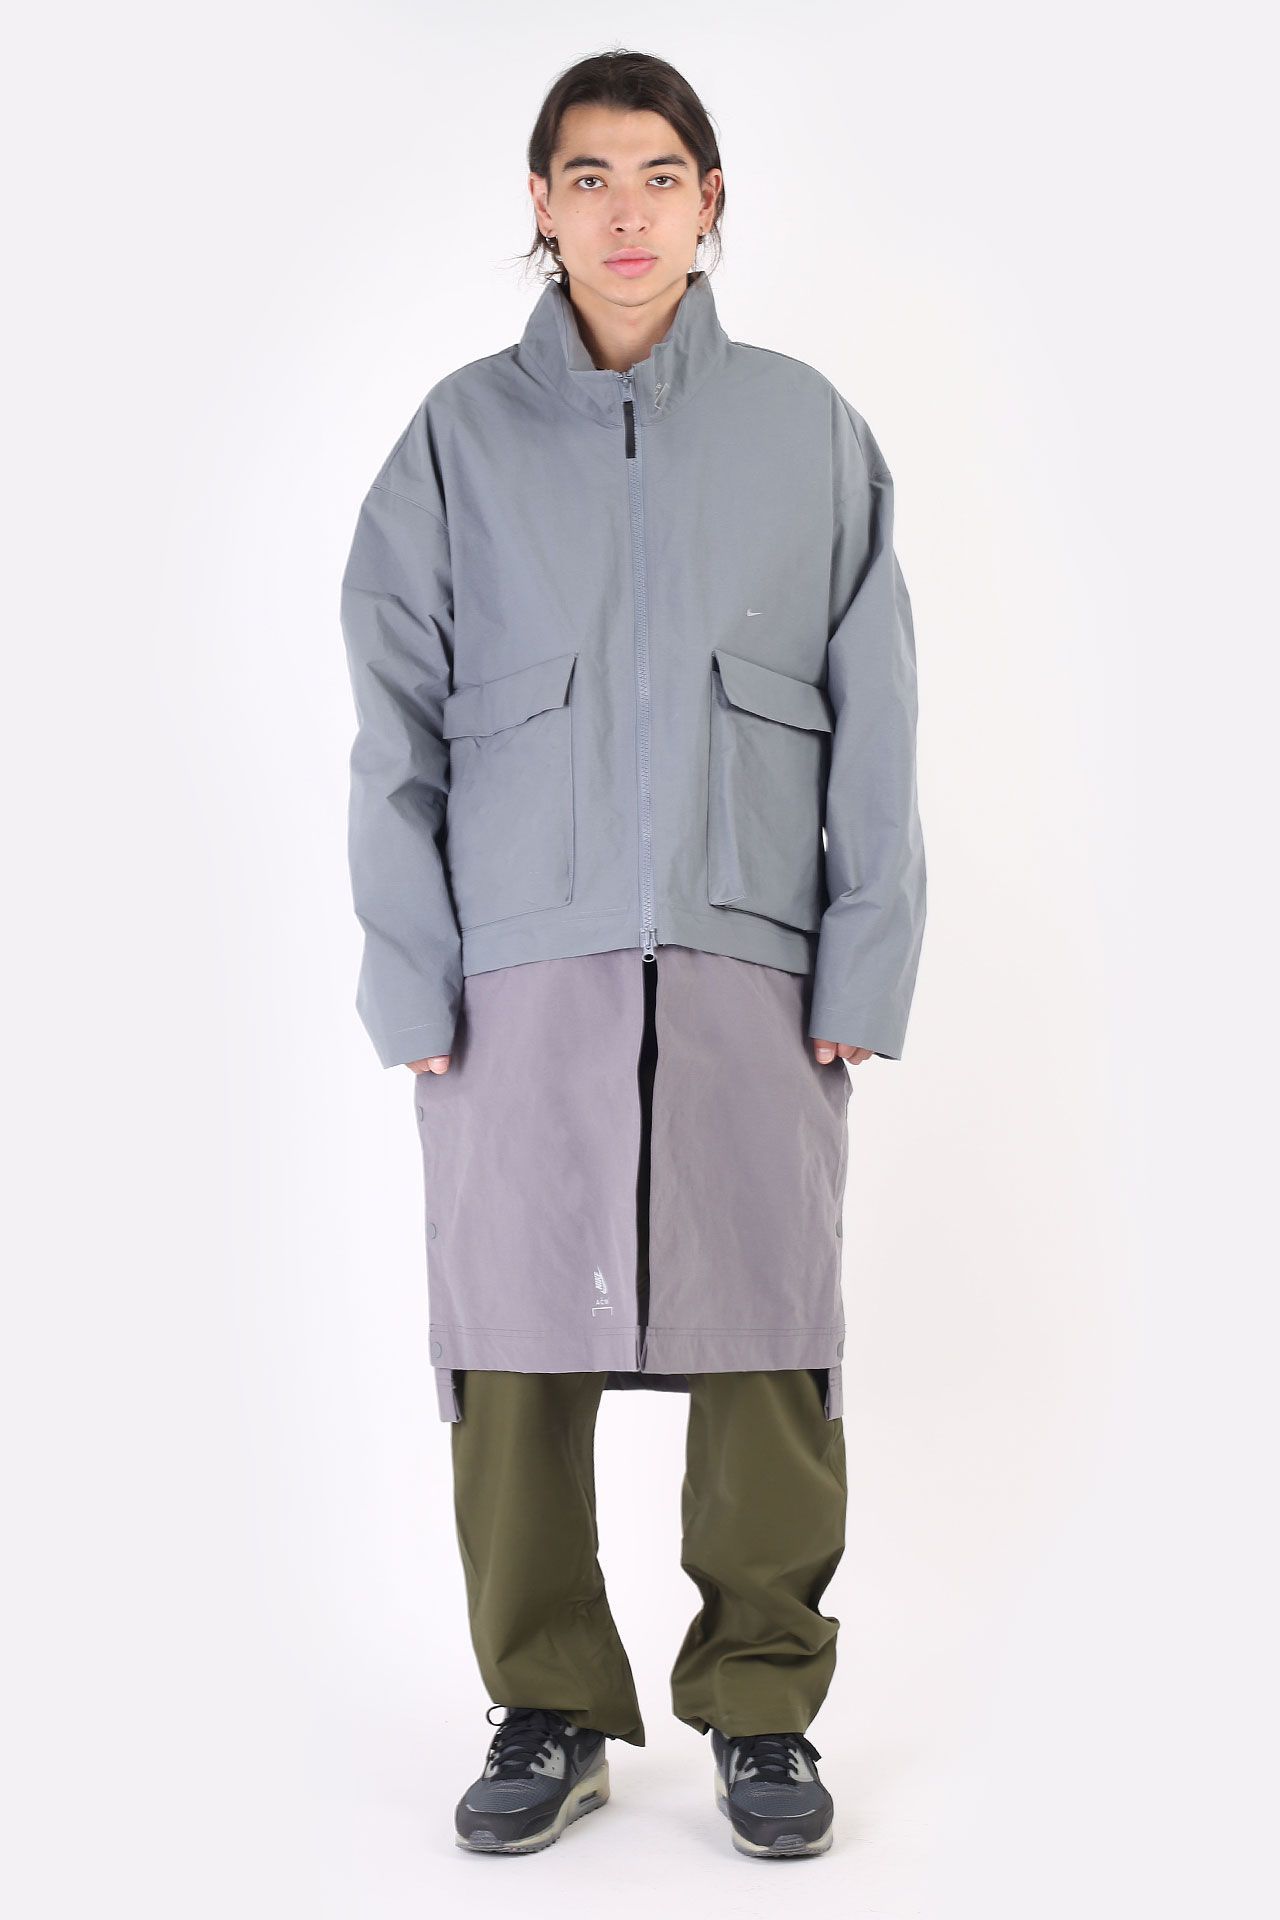 Серая мужская куртка x A-Cold-Wall NRG Jacket от Nike (AQ0430-065) по